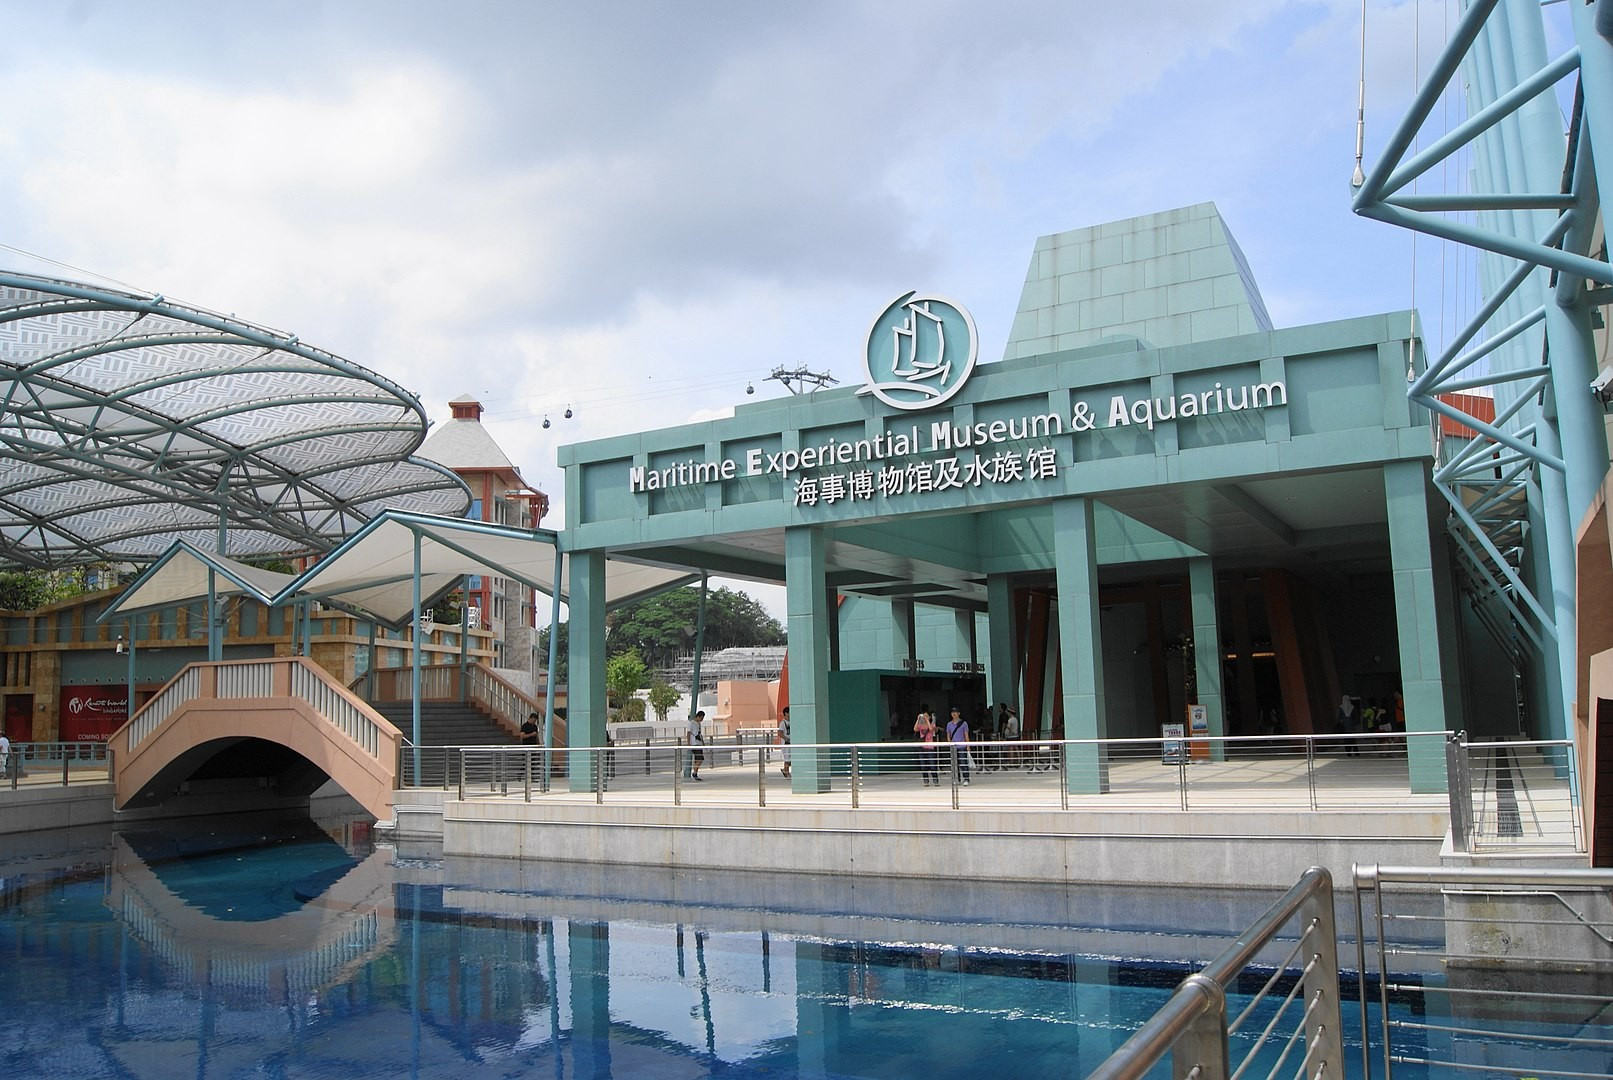 Maritime Experiential Museum, Singapore